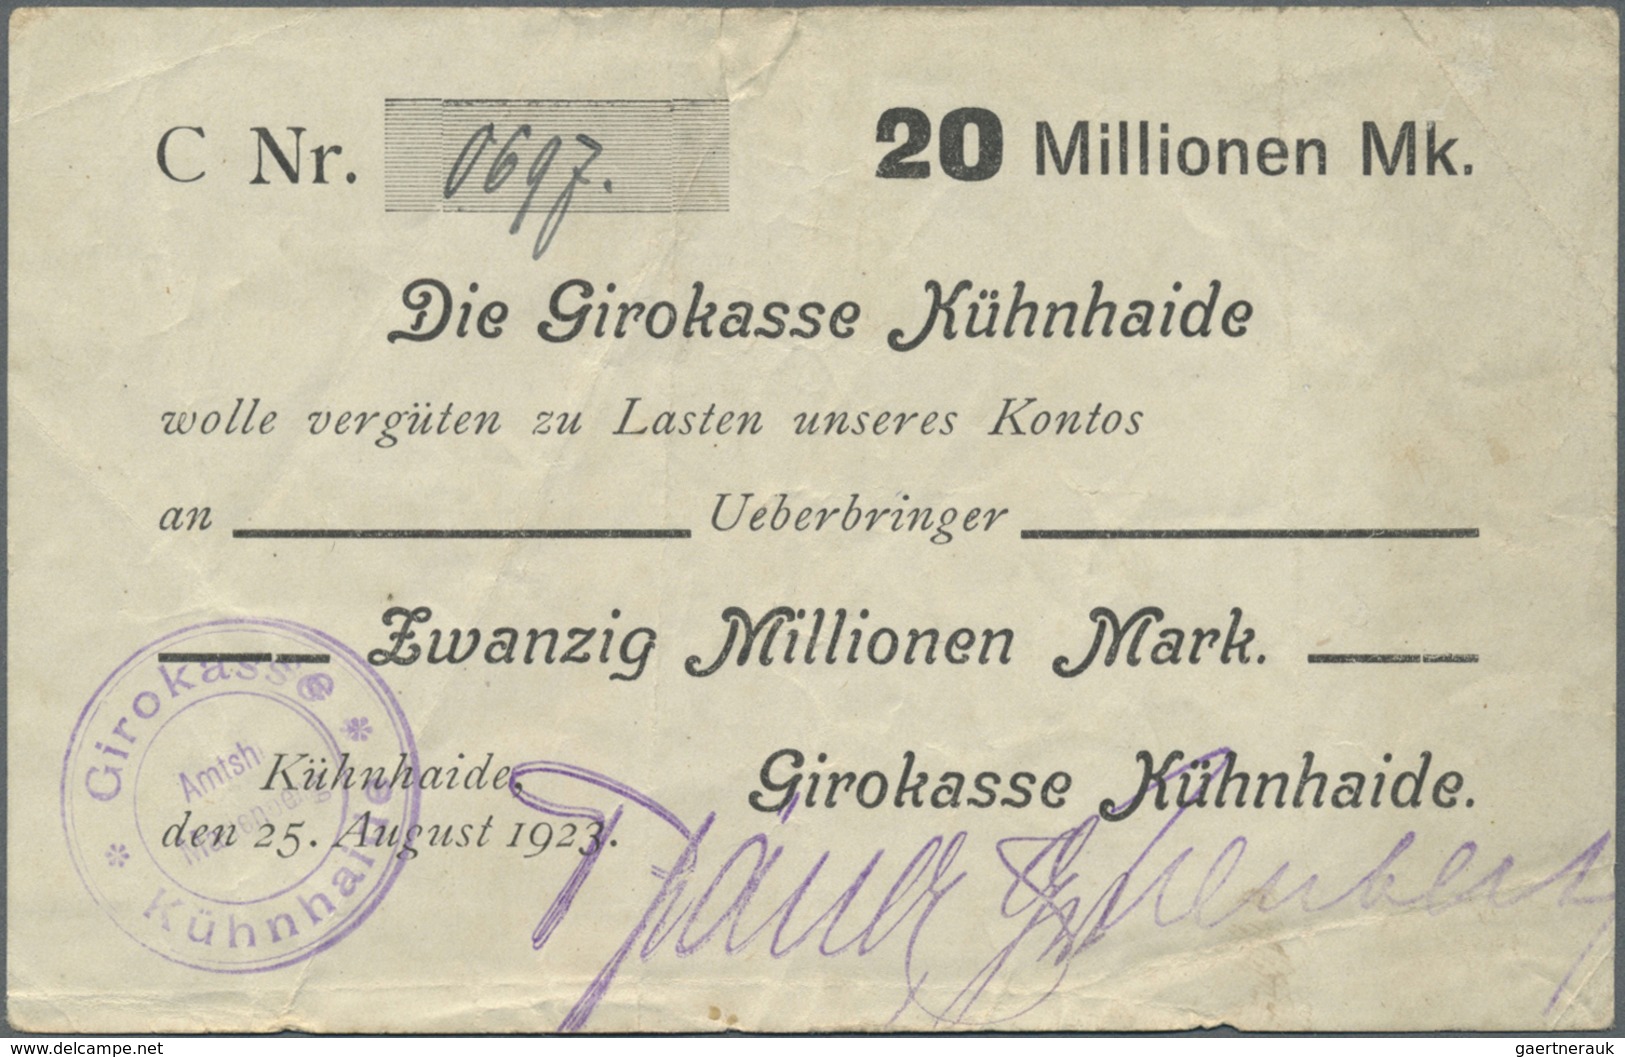 Deutschland - Notgeld - Sachsen: Kühnheide, Girokasse, 20 Mio. Mark, 25.8.1923, Erh. III - [11] Local Banknote Issues